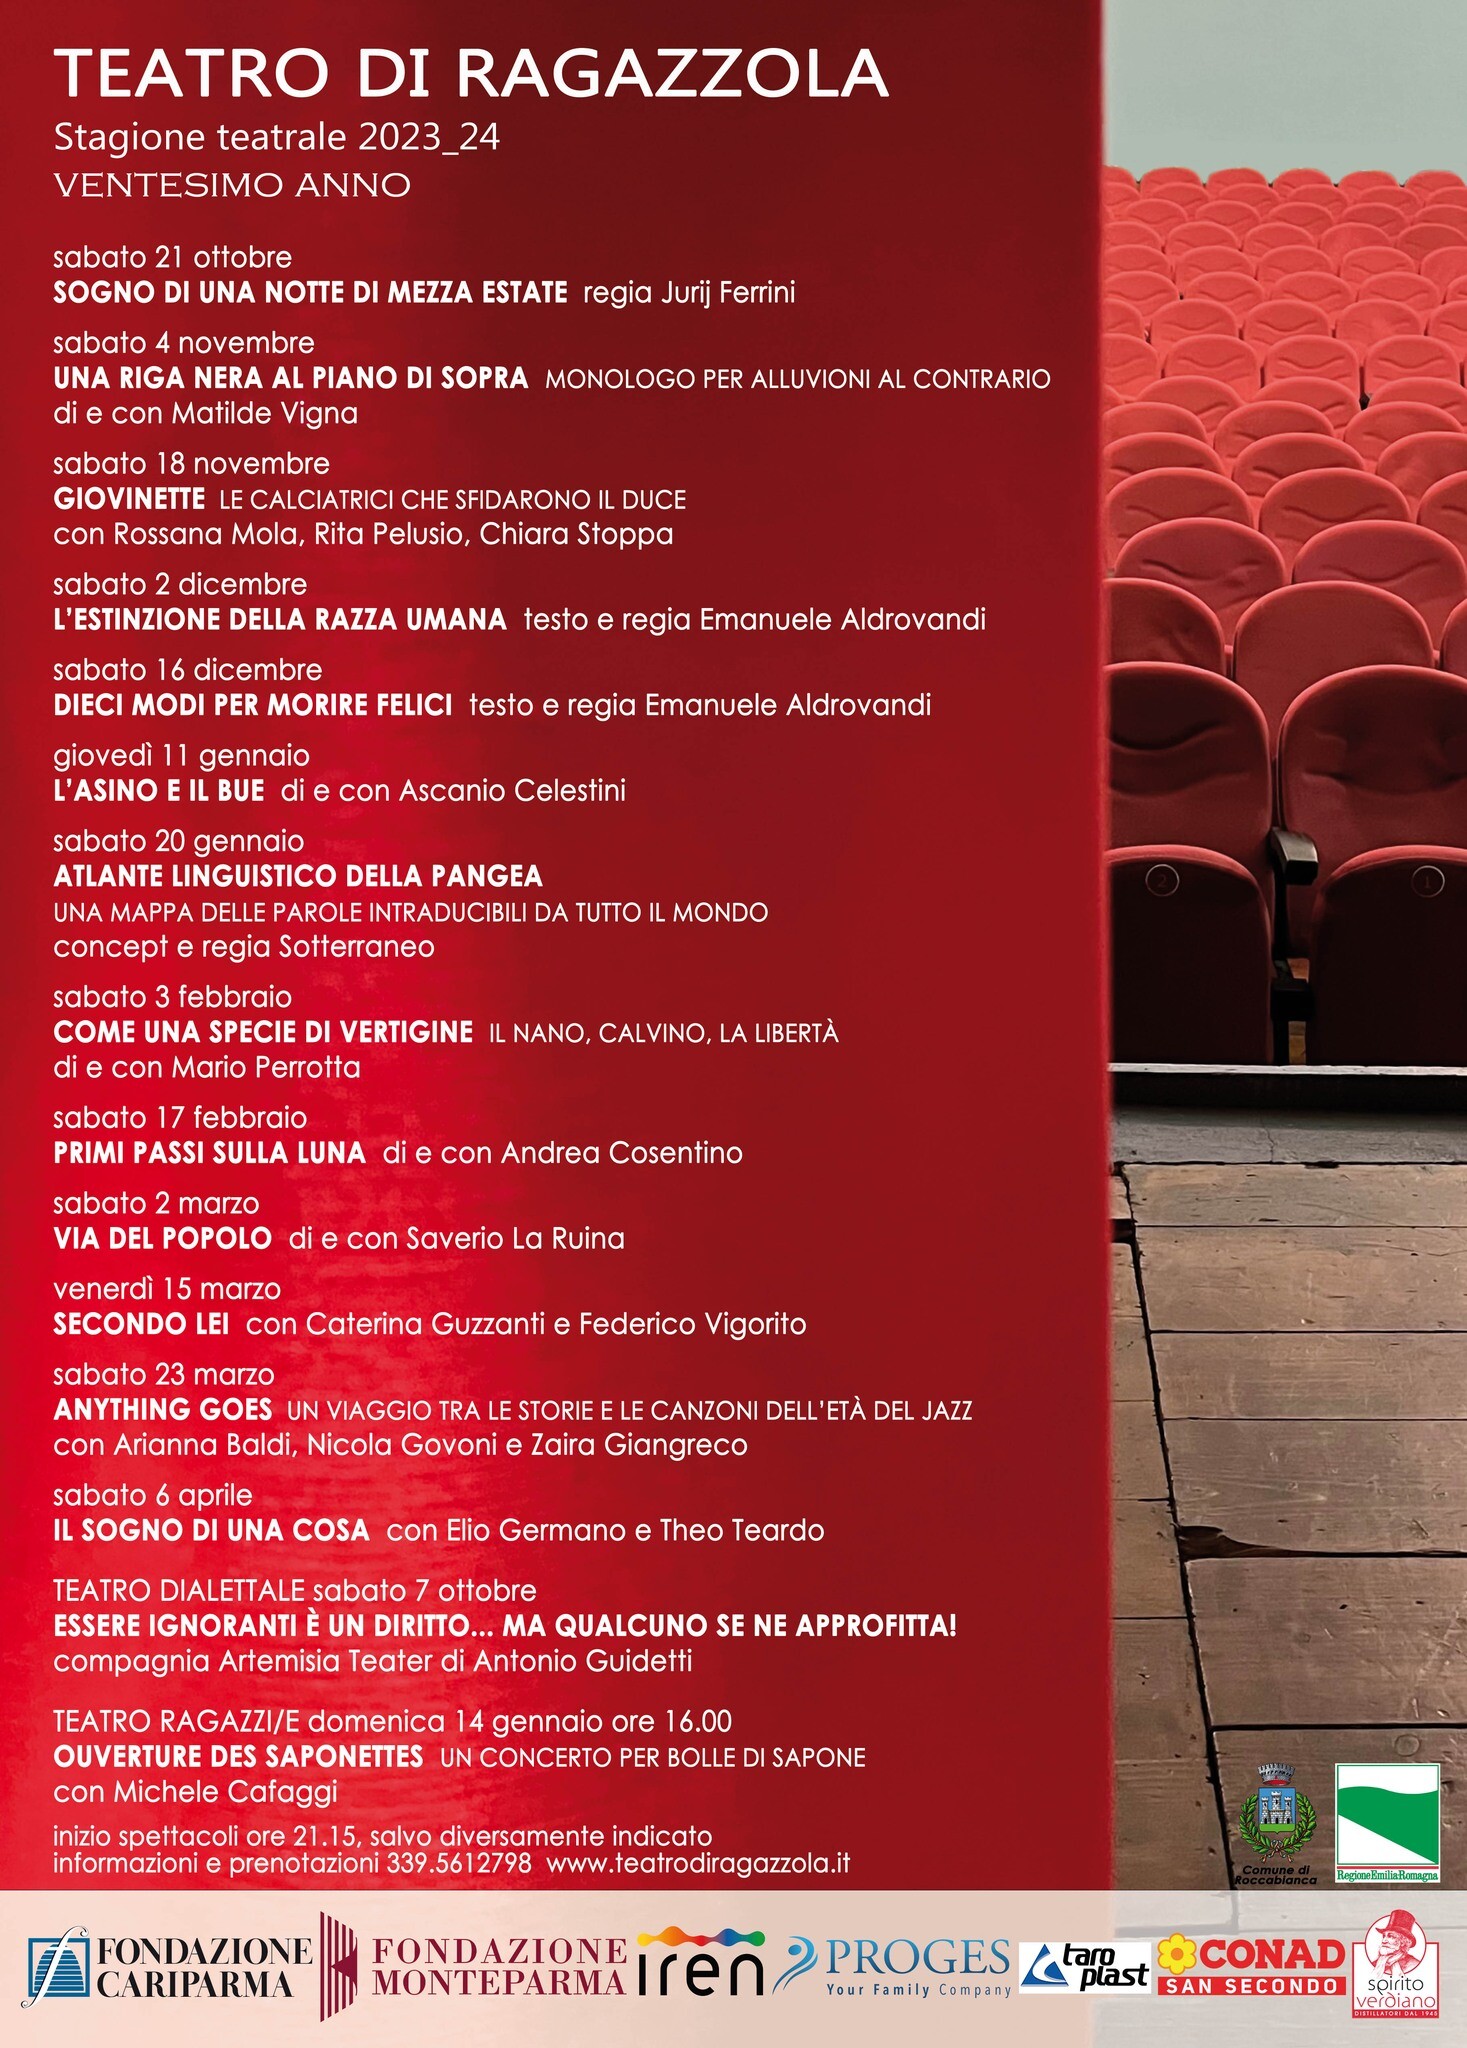 Stagione del Teatro di Ragazzola 2023-2024